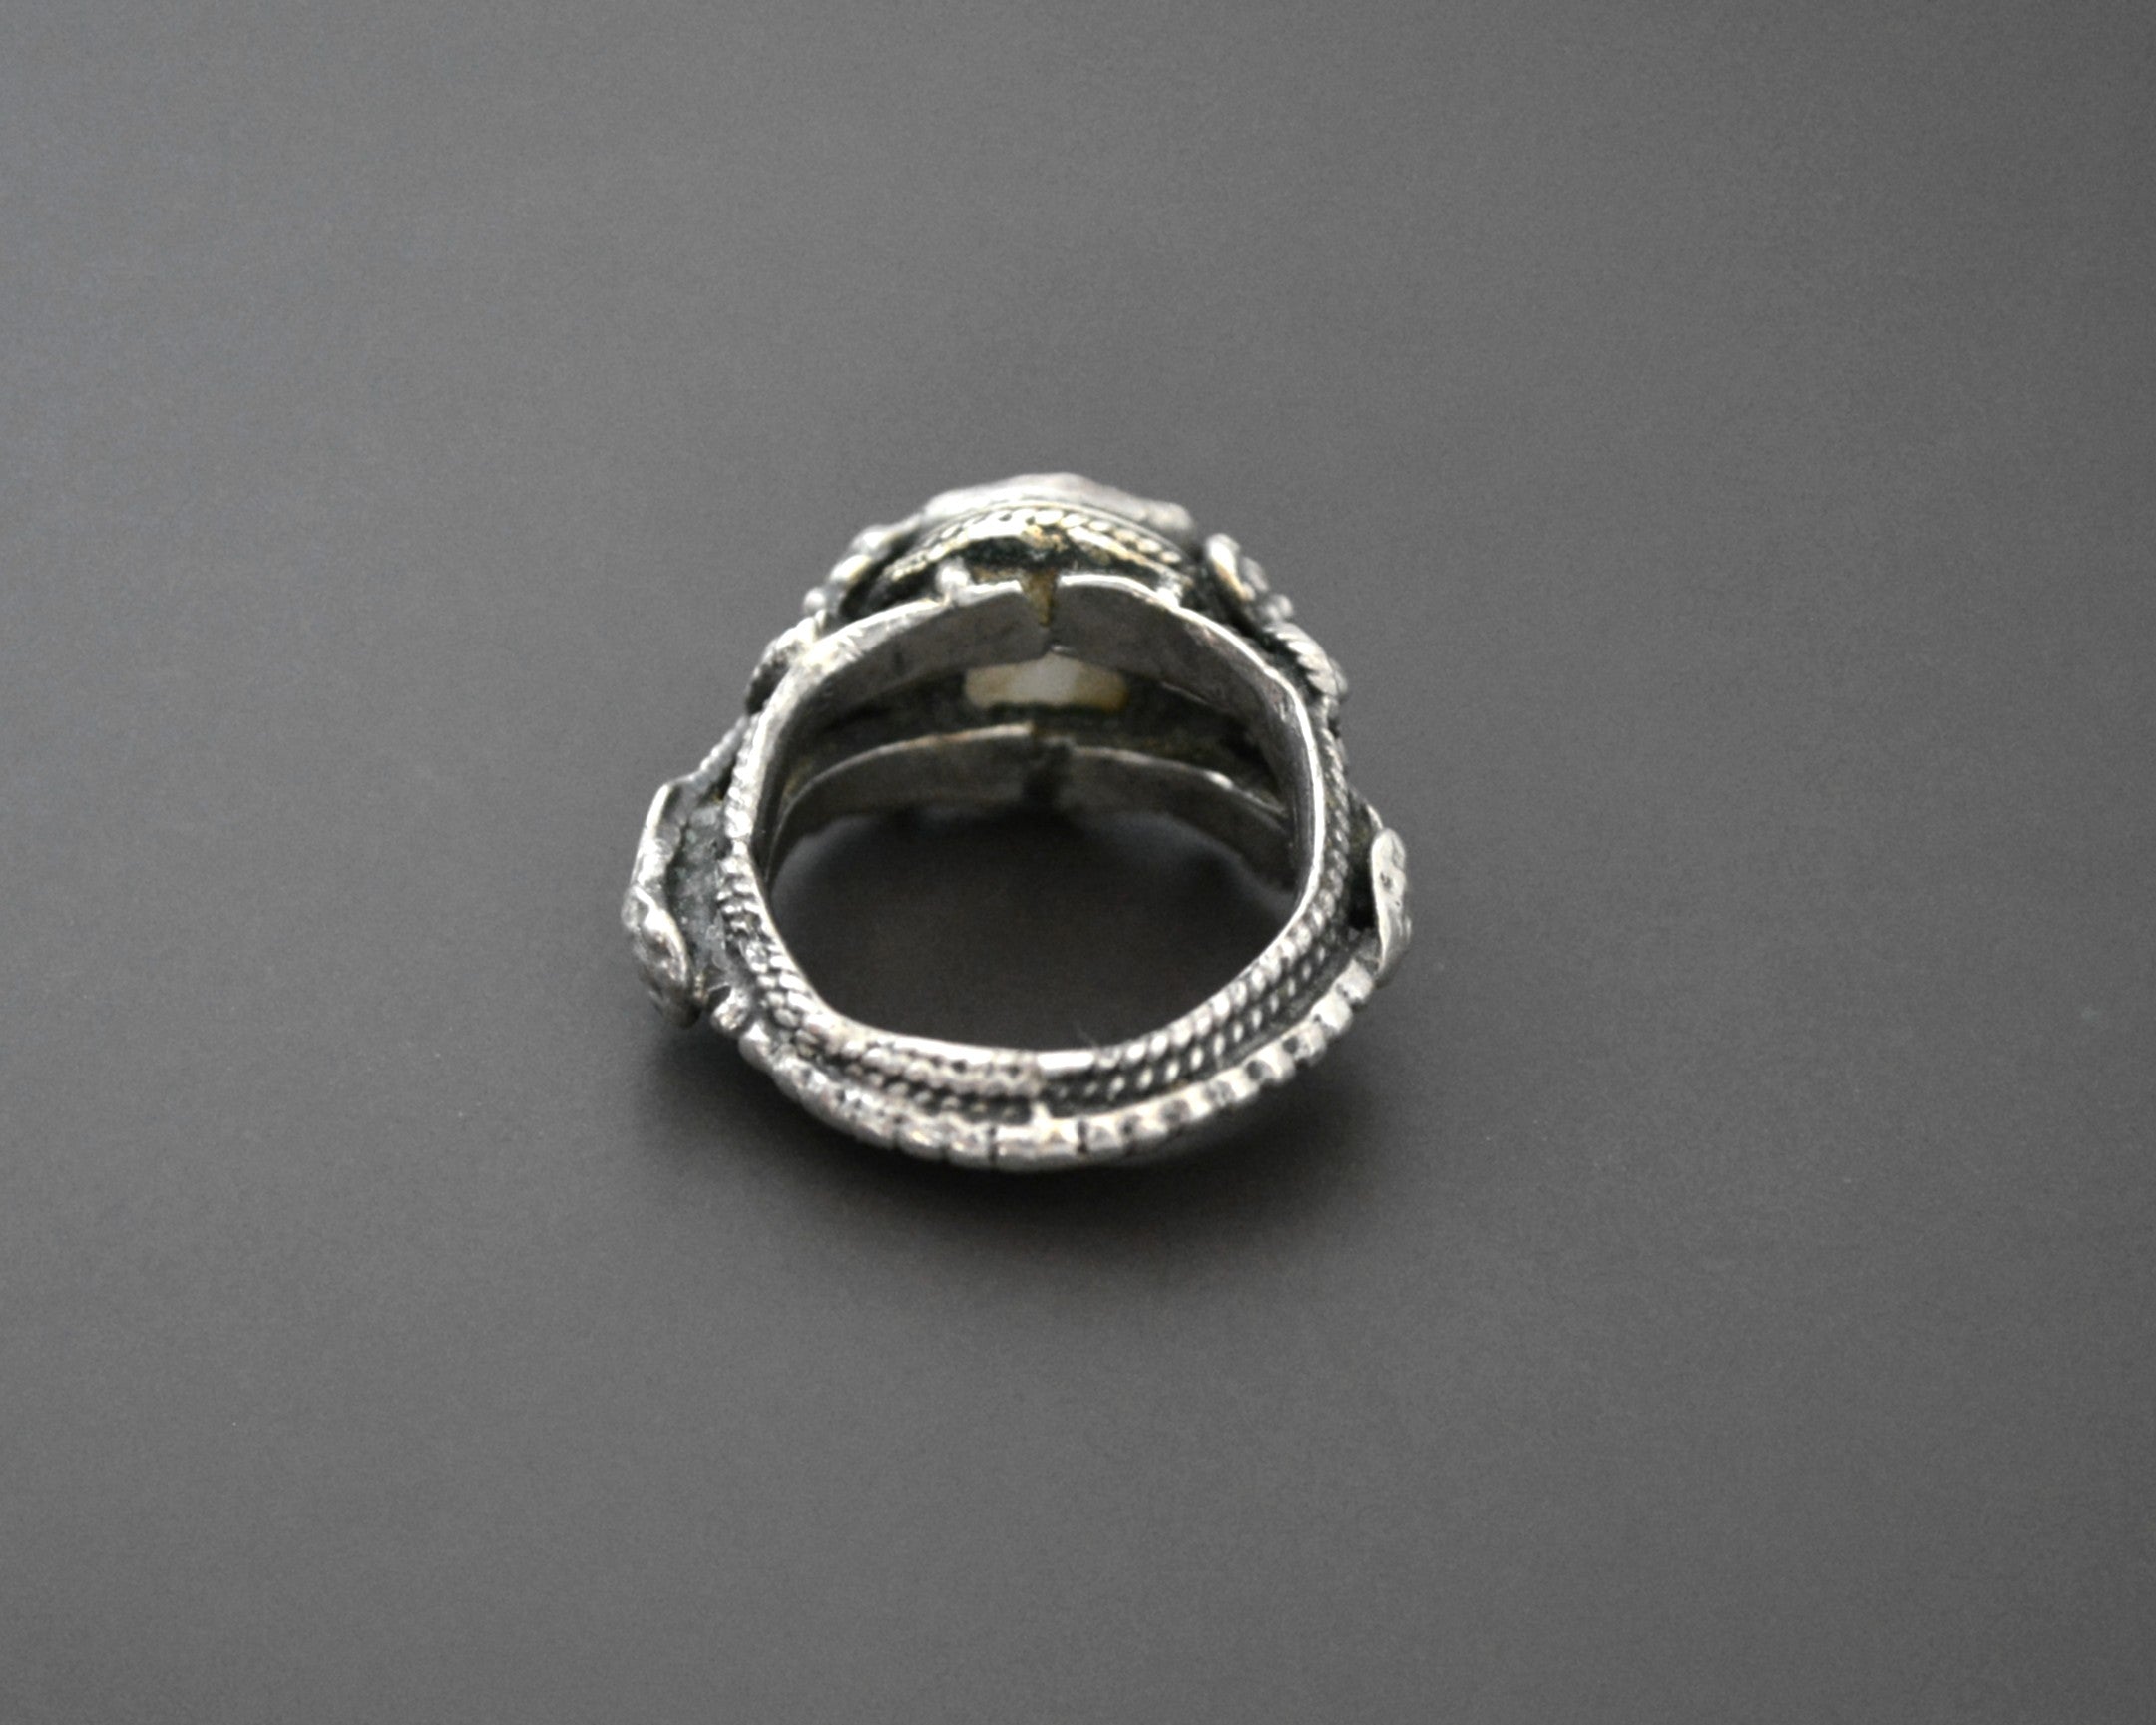 Antique Yemeni Agate Ring - Size 7